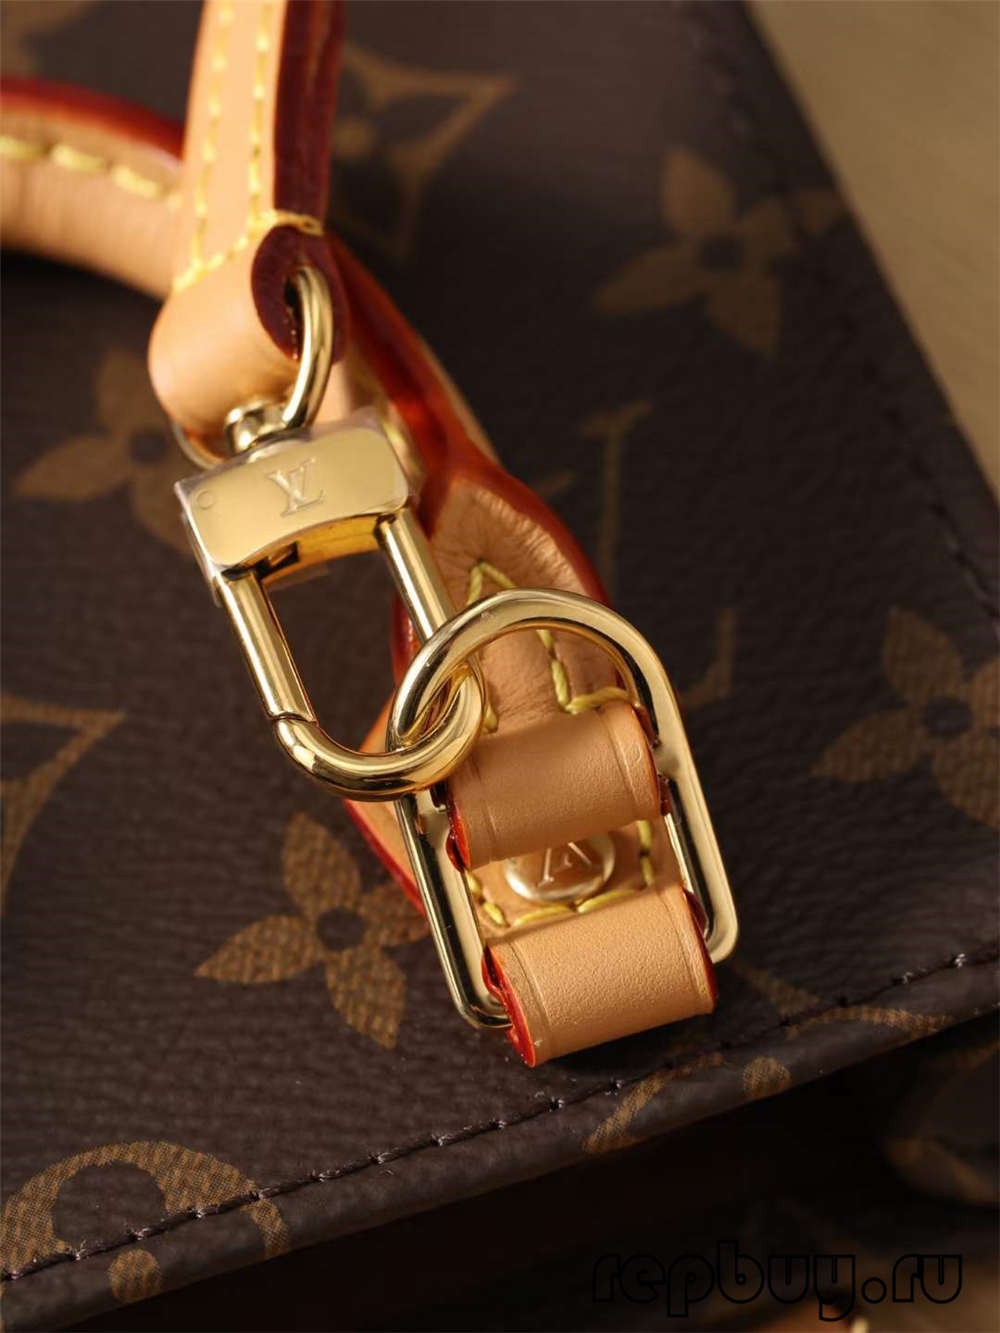 Louis Vuitton M69442 Petit Sac Plat çanta kopje me cilësi të lartë (2022 e përditësuar)-Dyqani në internet i çanta Louis Vuitton Fake me cilësi më të mirë, kopje e çantës së stilistit ru